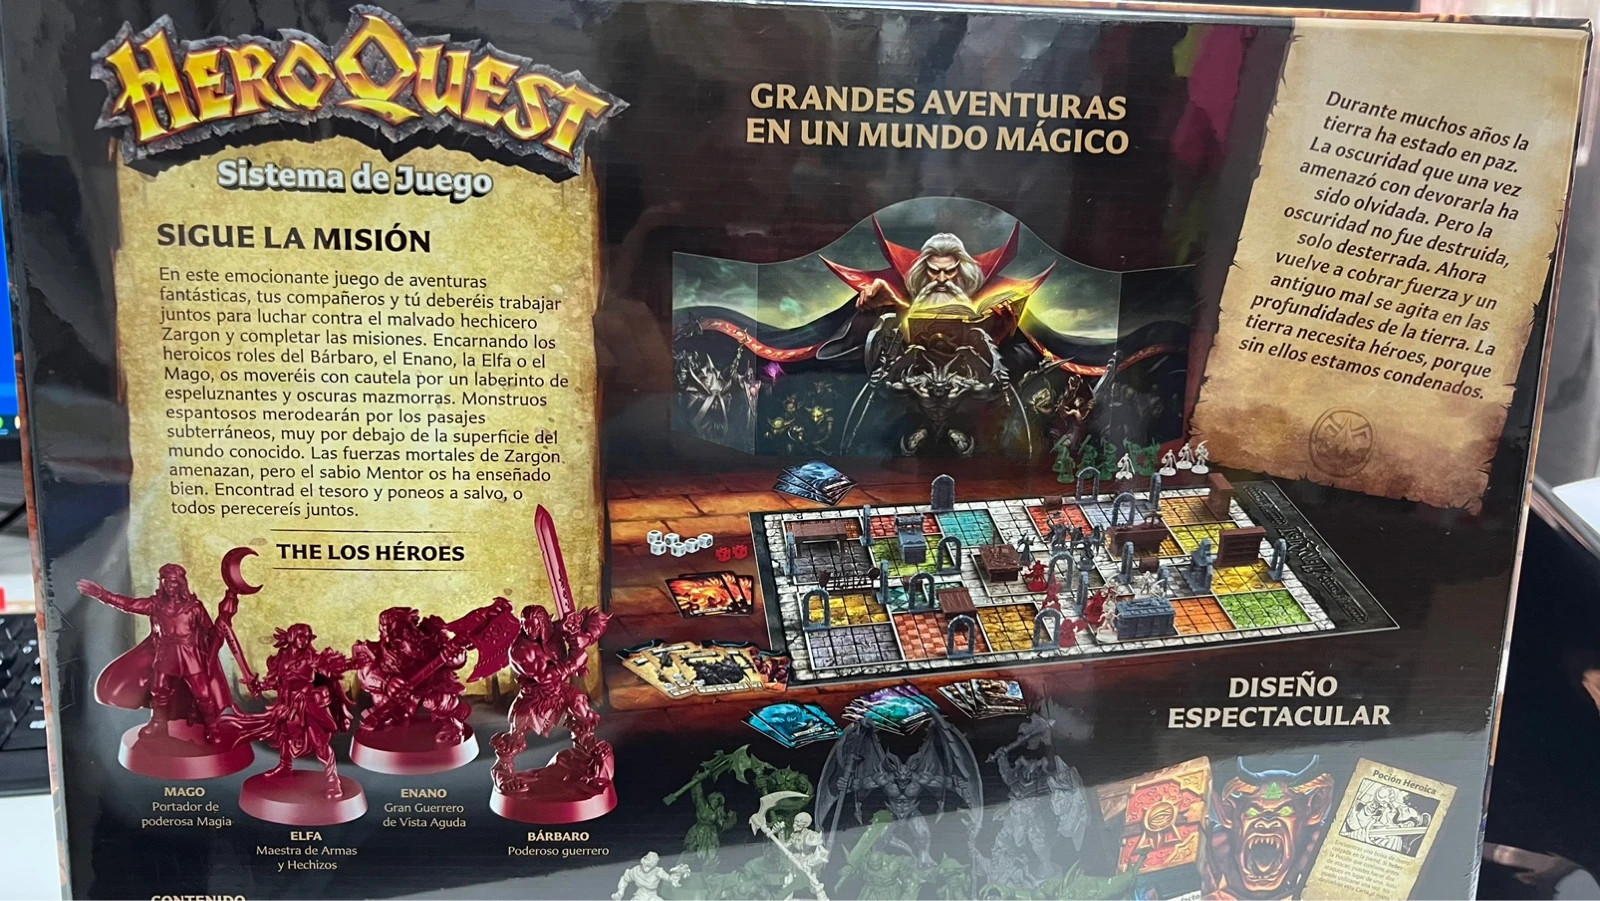 El Absurdeta on X: Aventura New Beginnings traducida al Español para el  Nuevo HeroQuest de Hasbro. P.2 #heroquest #boardgame #juegosderol  #juegosdemesa #wargames #DungeonCrawler #roleplaying   / X